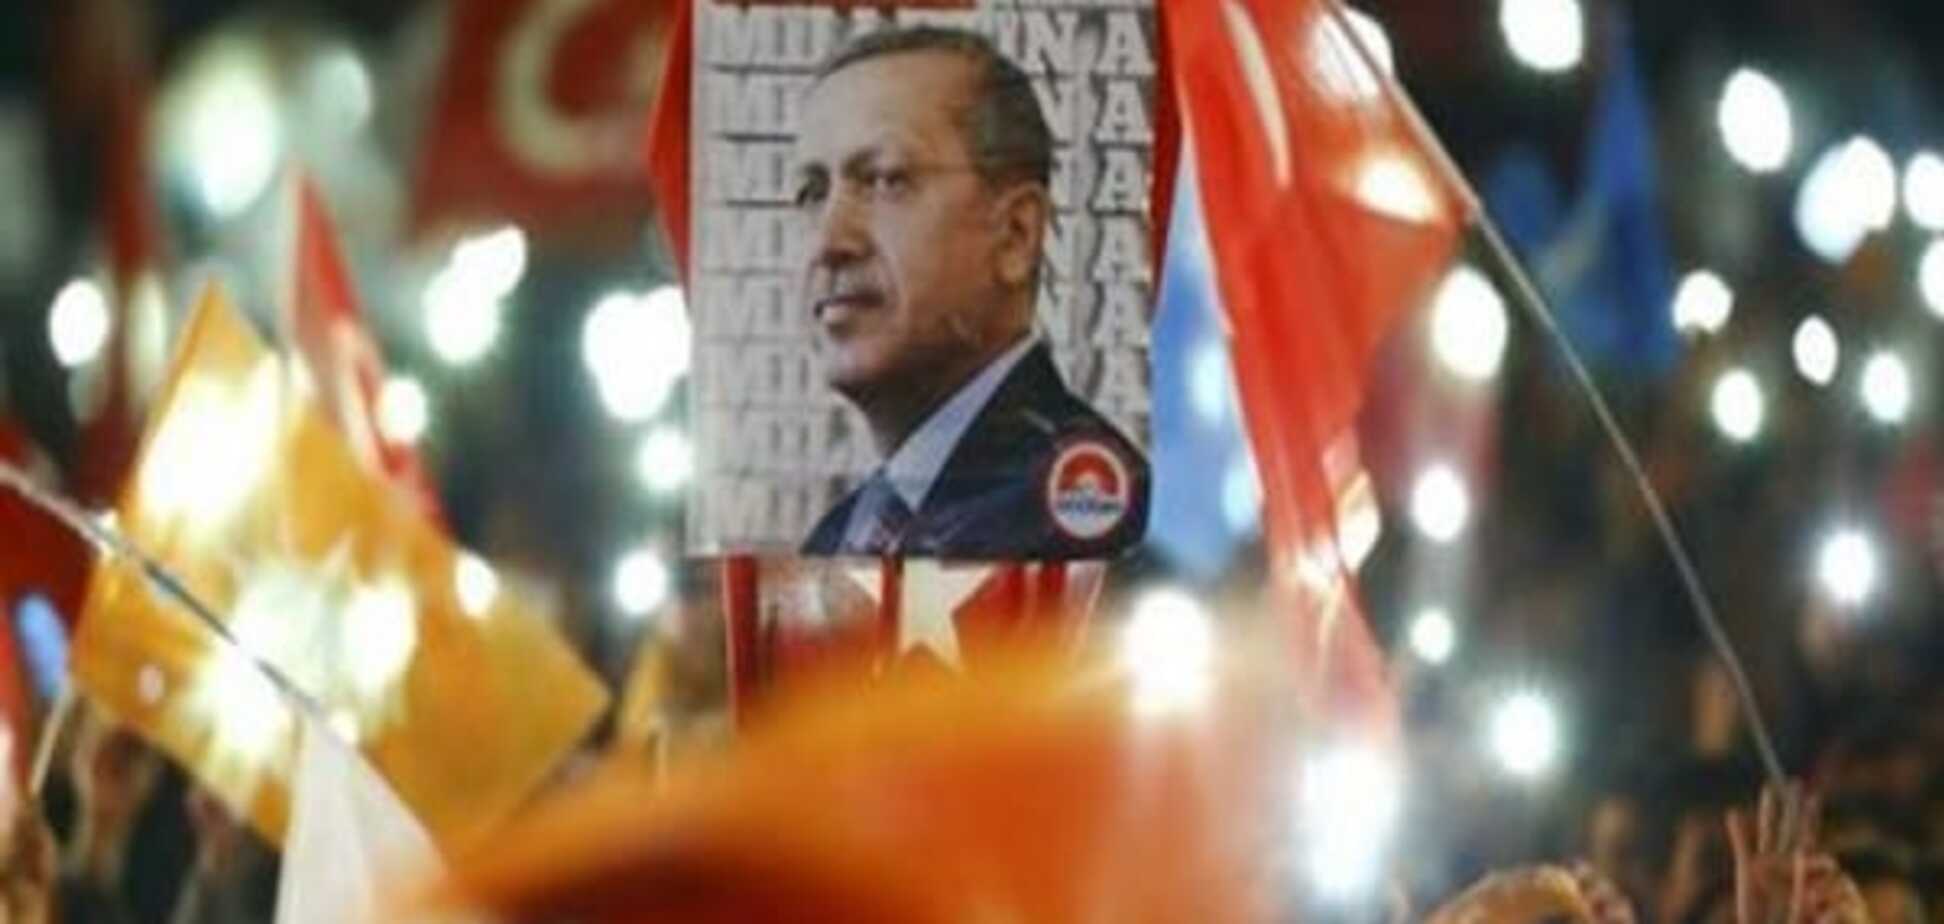 Страх определил результаты выборов в Турции